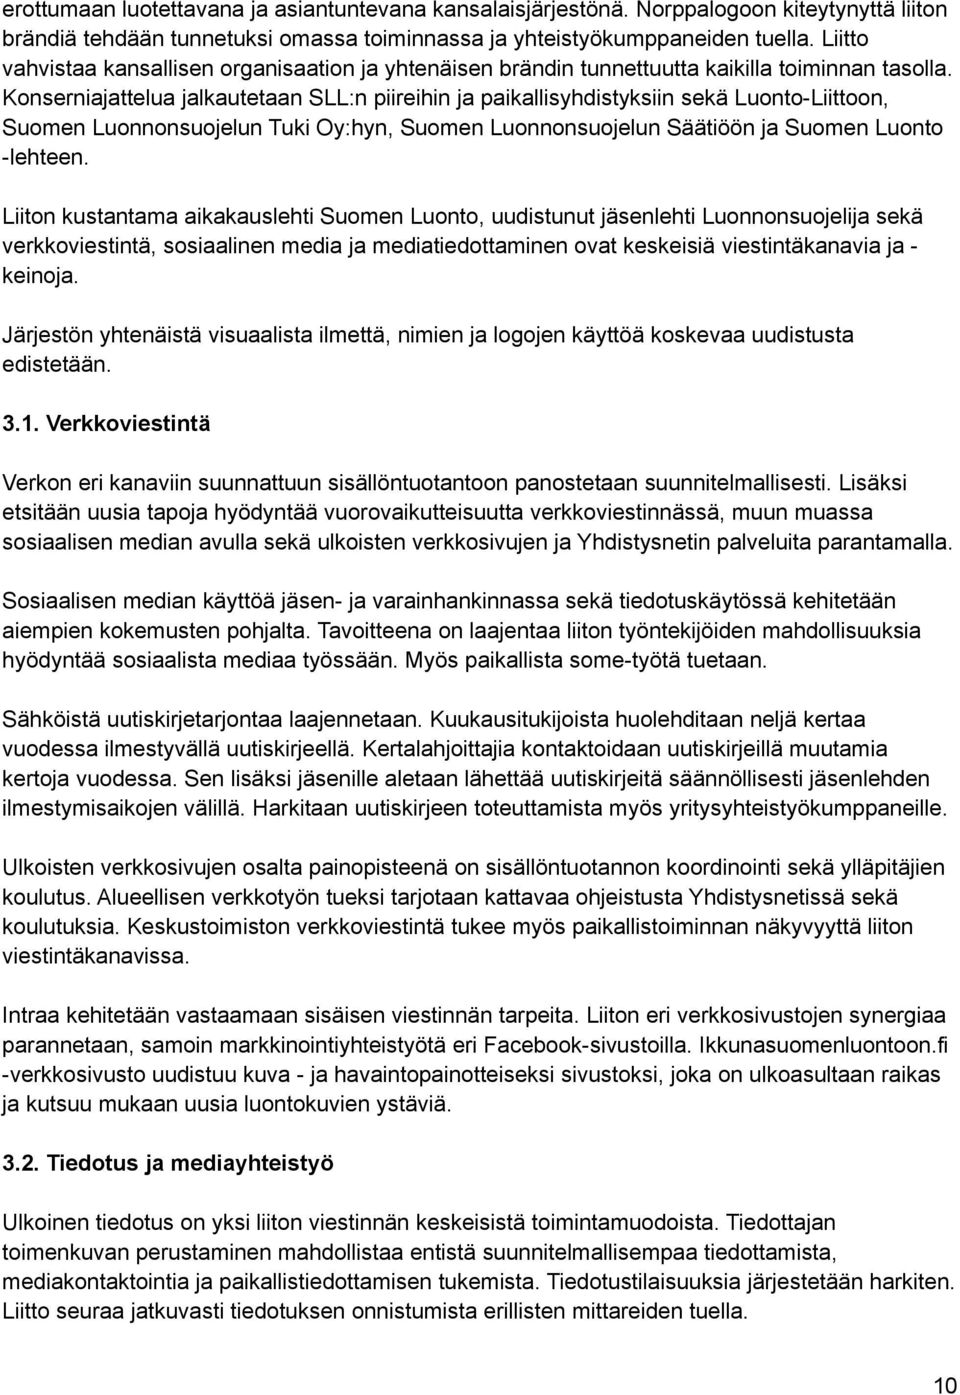 Konserniajattelua jalkautetaan SLL:n piireihin ja paikallisyhdistyksiin sekä Luonto-Liittoon, Suomen Luonnonsuojelun Tuki Oy:hyn, Suomen Luonnonsuojelun Säätiöön ja Suomen Luonto -lehteen.